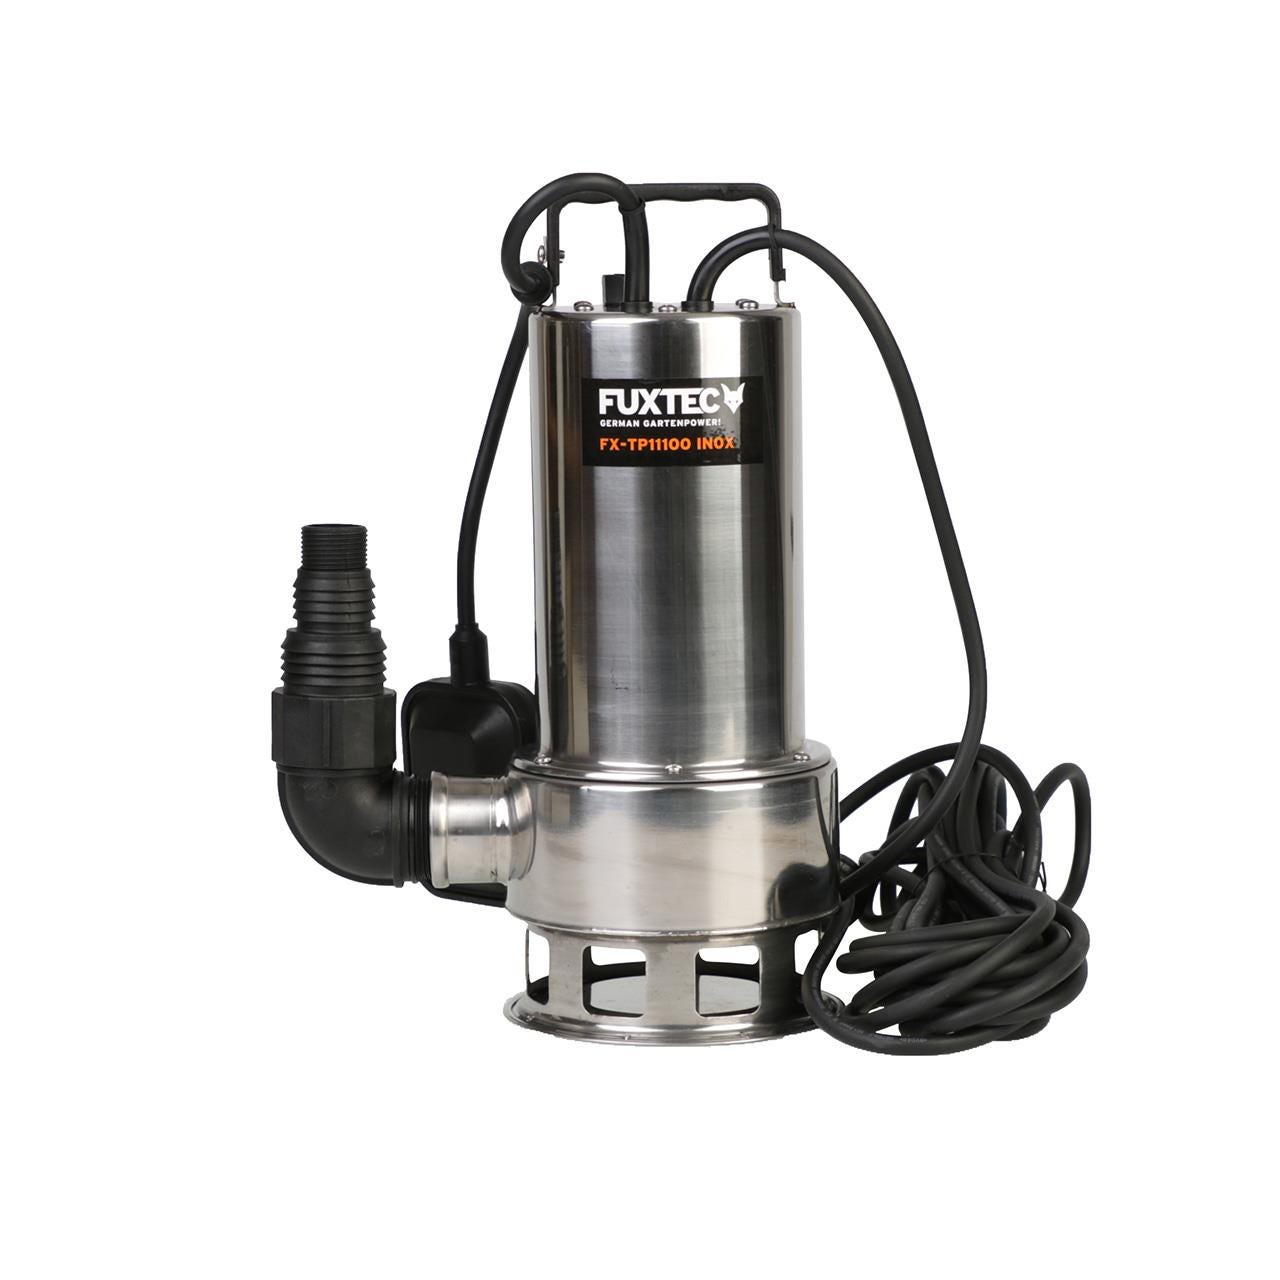 Pompe de relevage eaux usées - FUXTEC FX-TP11100 - INOX 1100W